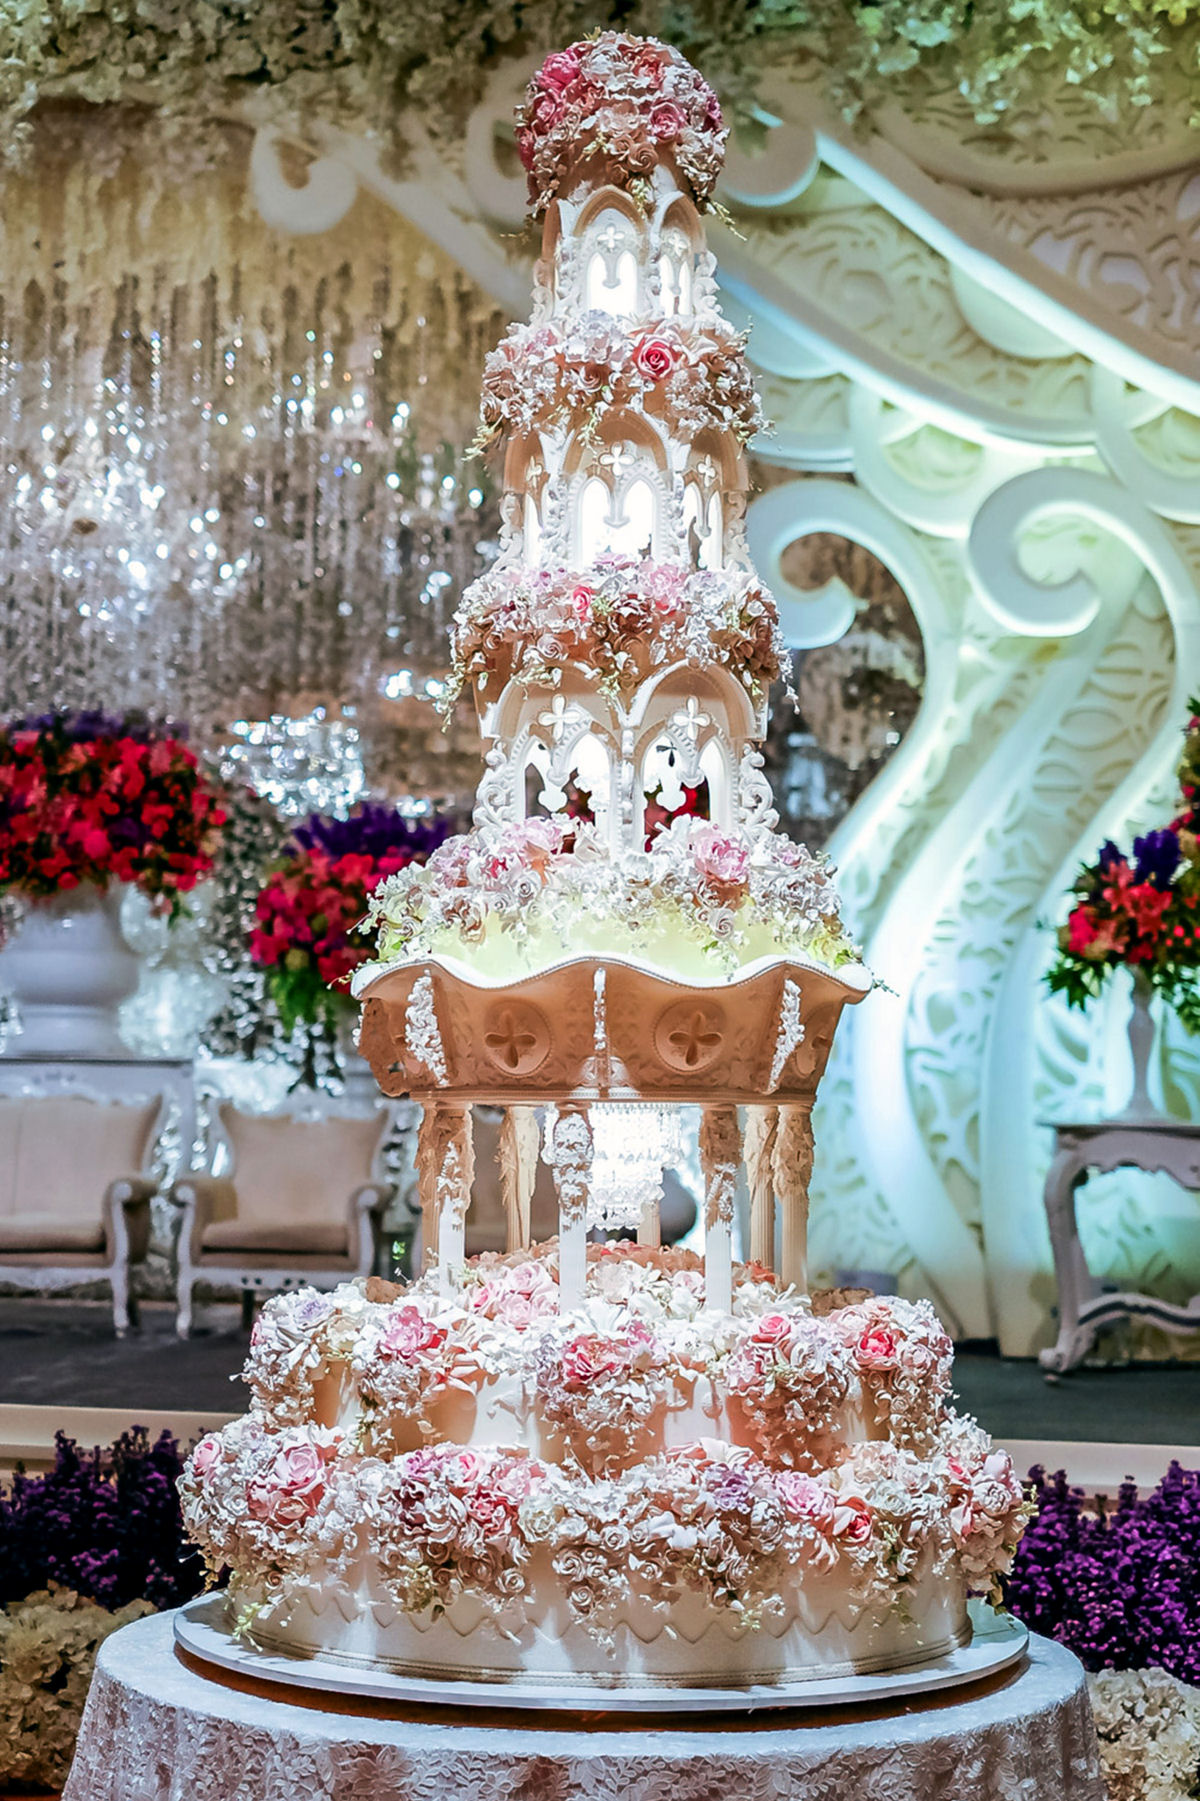 Confeitaria indonésia cria os bolos de casamento mais elaborados do mundo 04